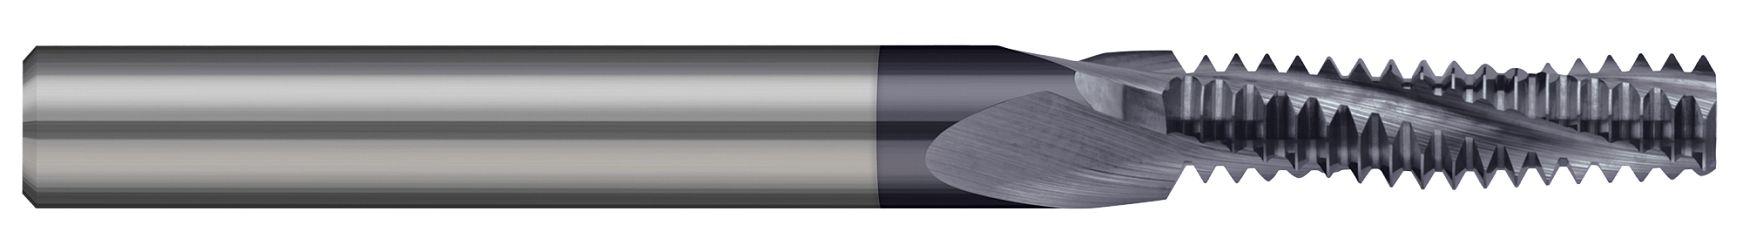 螺纹铣刀 - 多种形式 - 长笛 - 度量标准